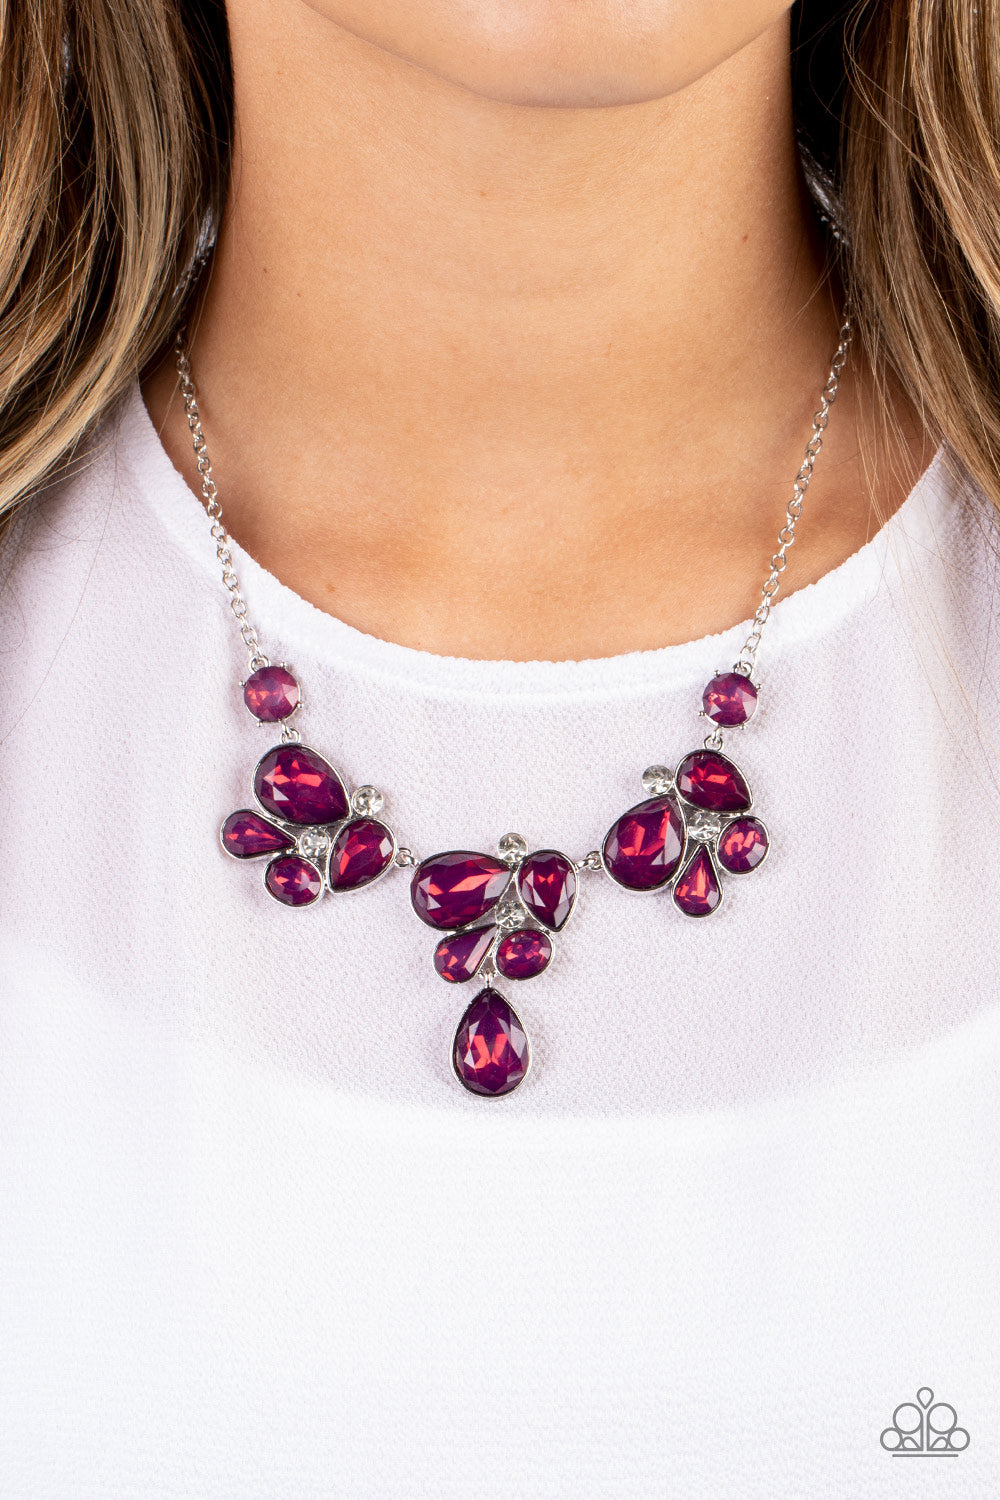 Paparazzi “Everglade Escape “ Purple Necklace Earring Set - Cindysblingboutique